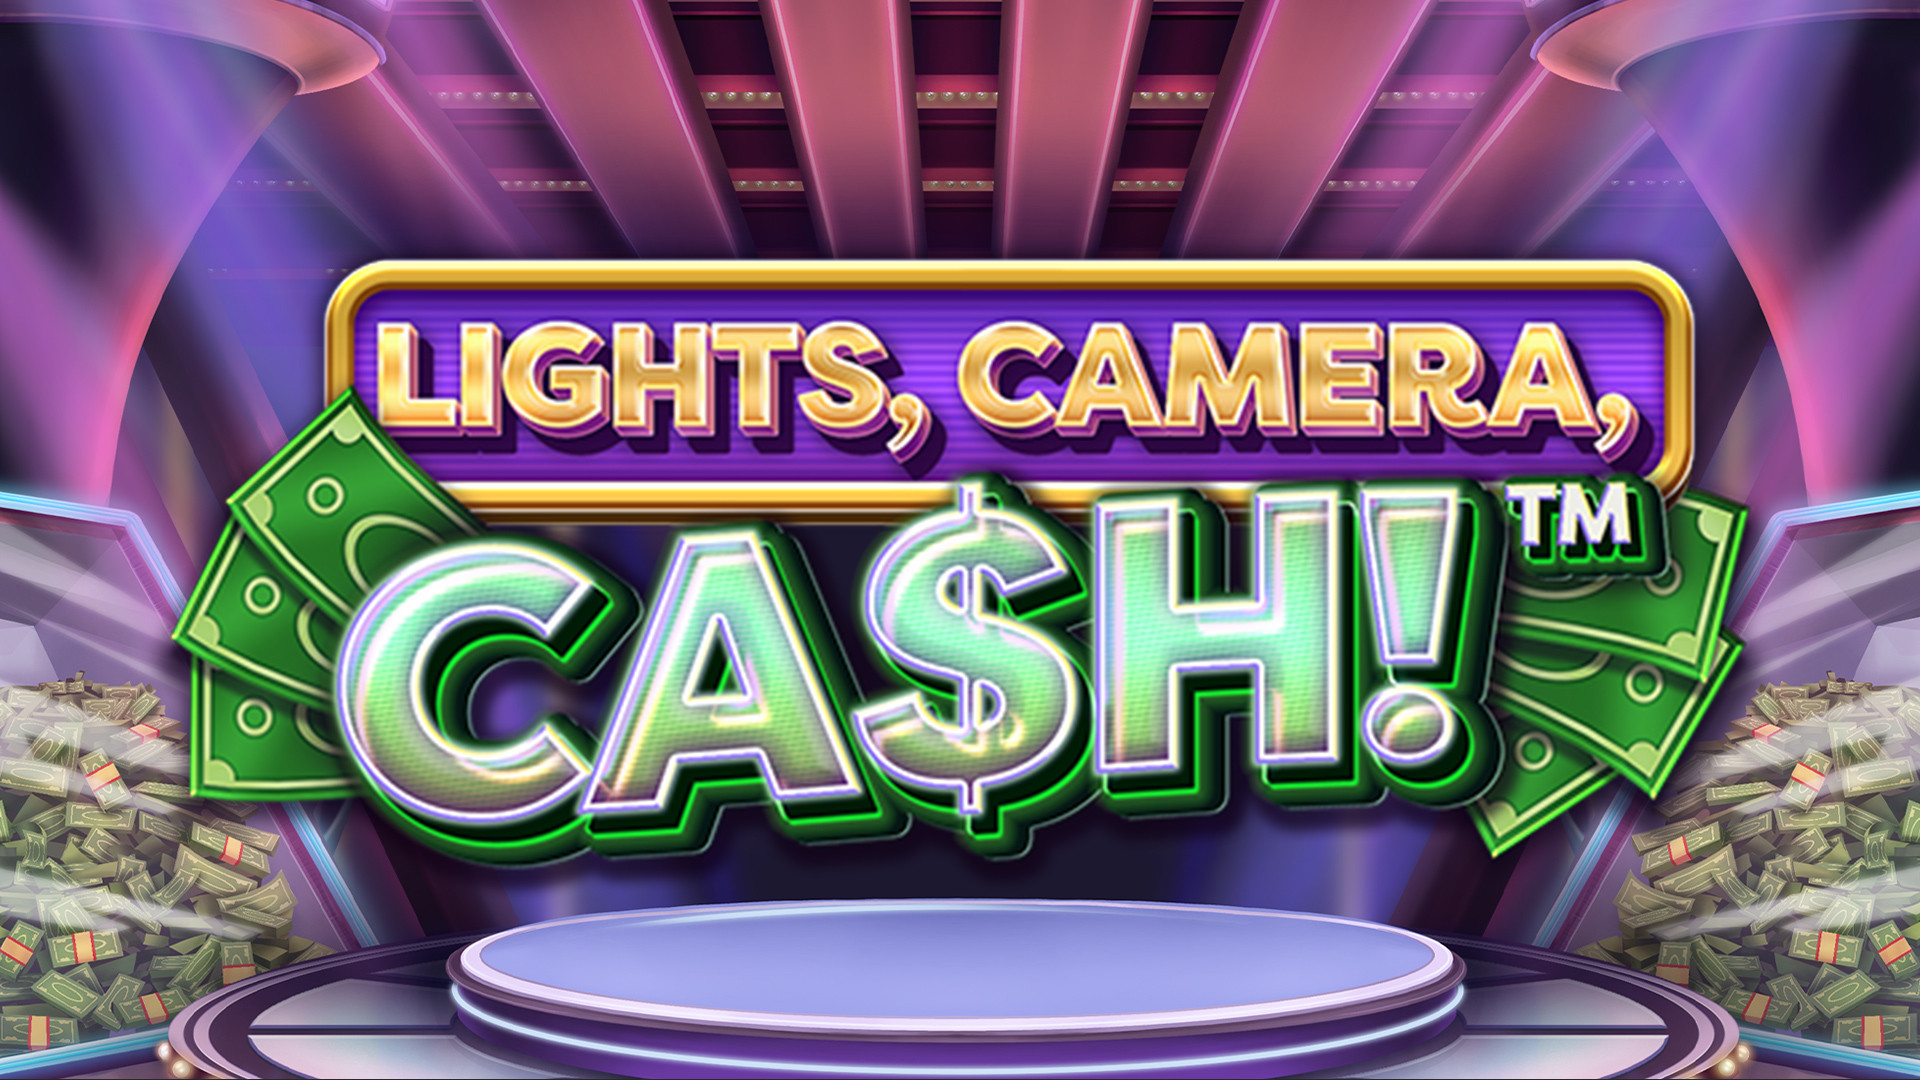 Lights, Camera, Cash